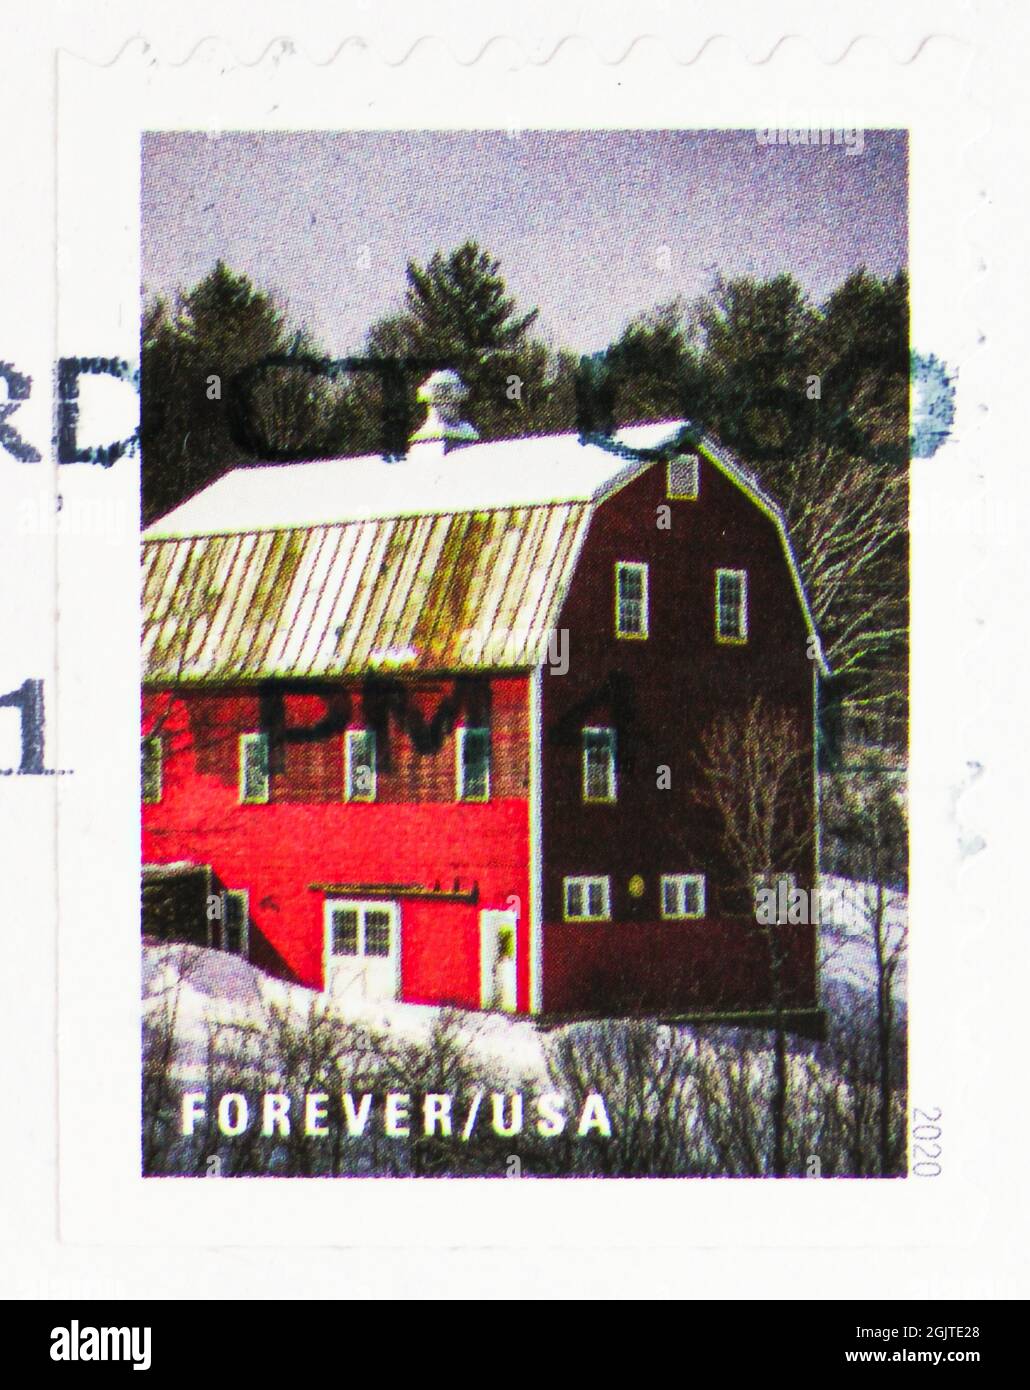 MOSKAU, RUSSLAND - 09. JUNI 2021: In den USA gedruckte Briefmarke zeigt Scheune Covered in Snow, Winterszenen (2020) Serie, um 2020 Stockfoto